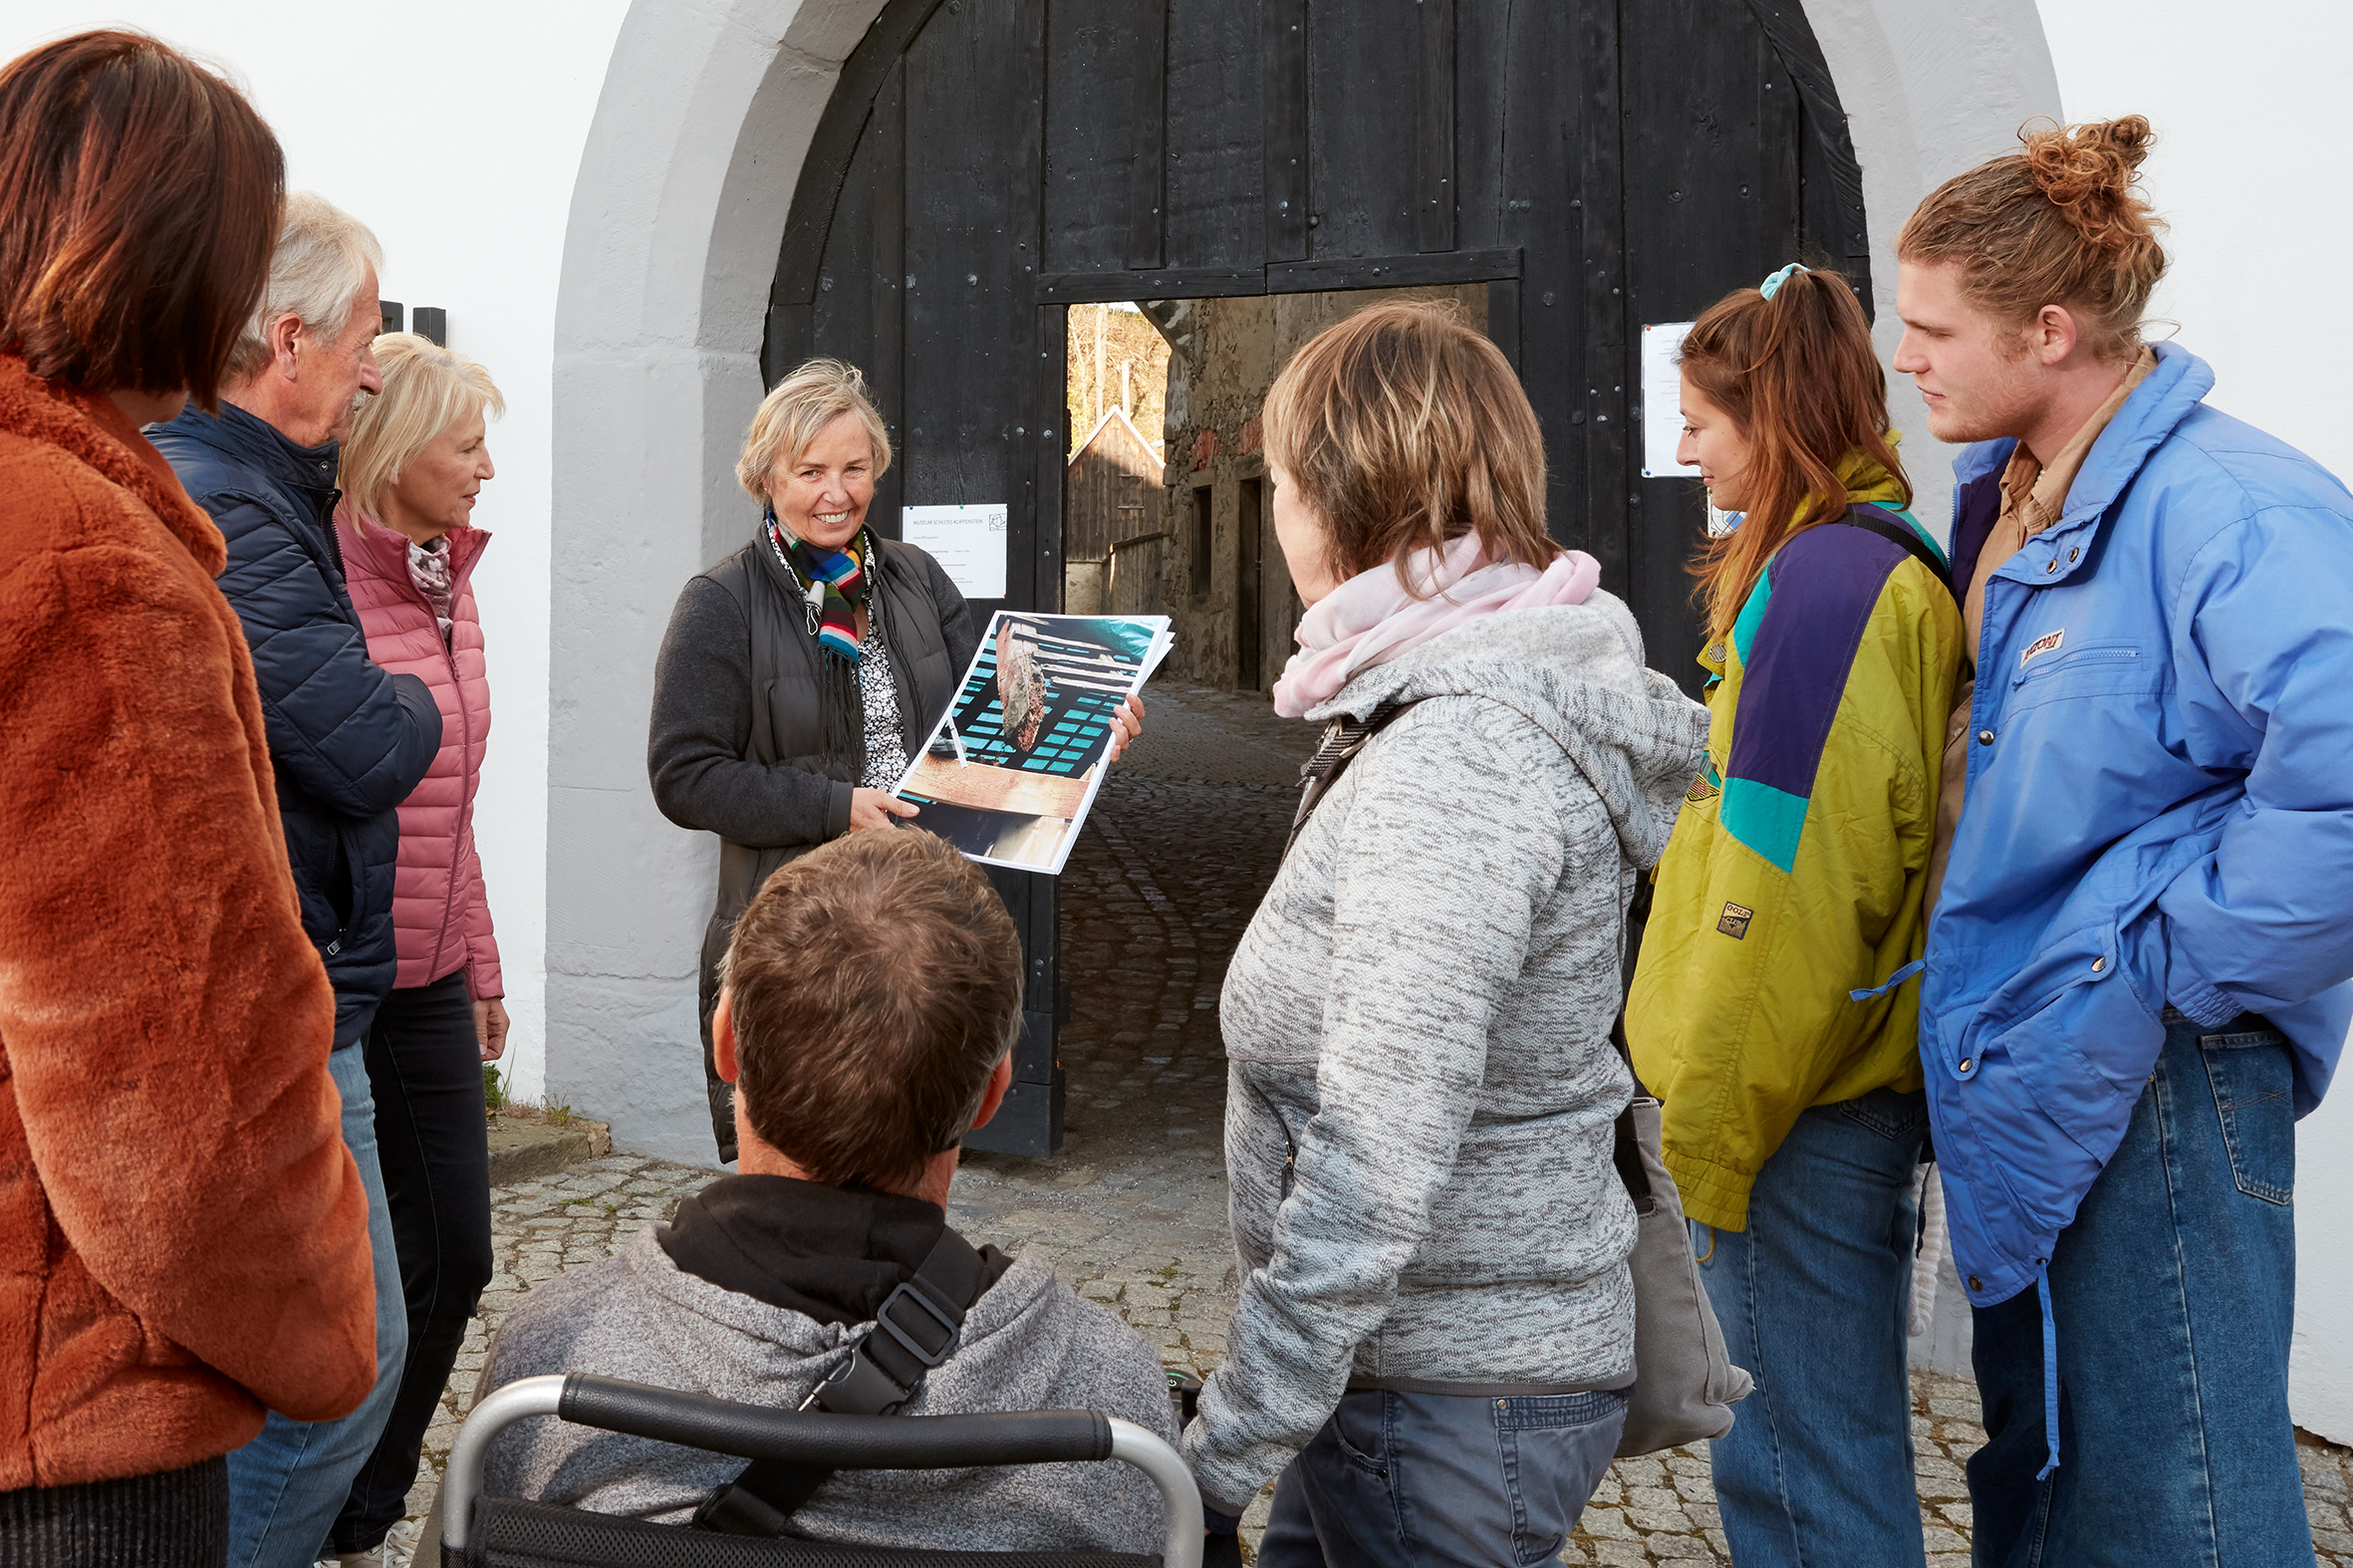 Foto in Vergrößerungsansicht öffnen: Die Schlossleiterin steht mit einer Gruppe von Besuchern vor dem großen Schlosstor. Durch die geöffnete Tür in der Mitte des schwarzen Tores kann man in den sonnigen Schlosshof sehen.